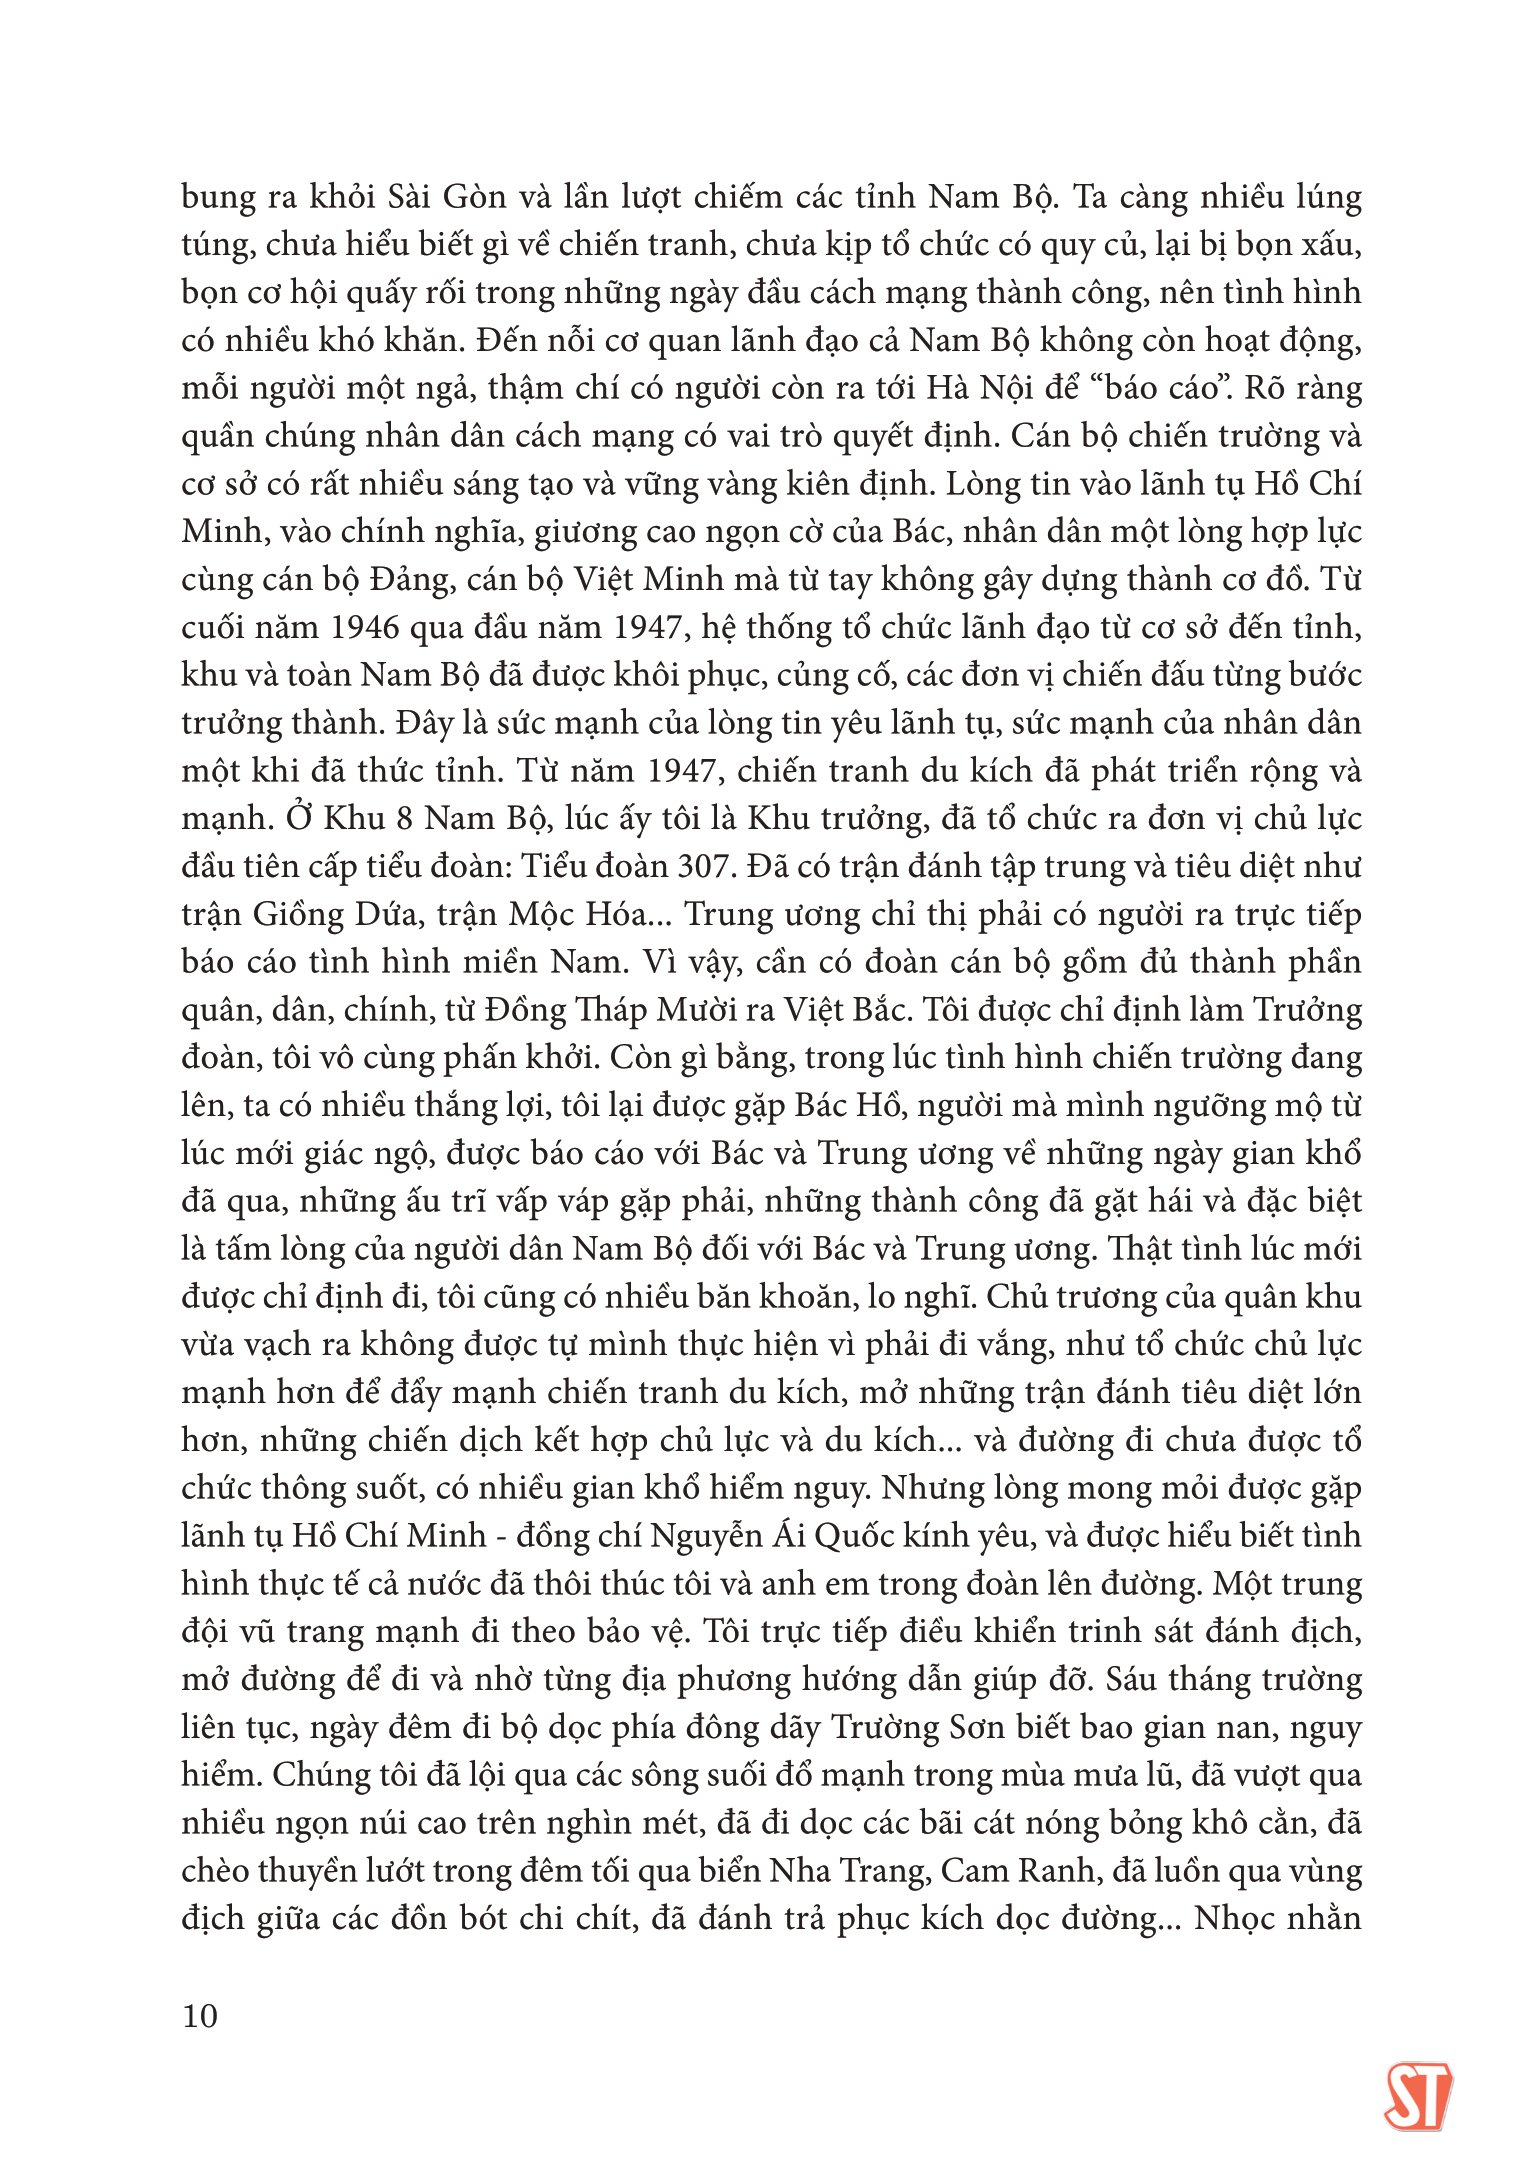 Thượng Tướng Trần Văn Trà Và Những Chặng Đường Lịch Sử B2 Thành Đồng - Tập 2 PDF